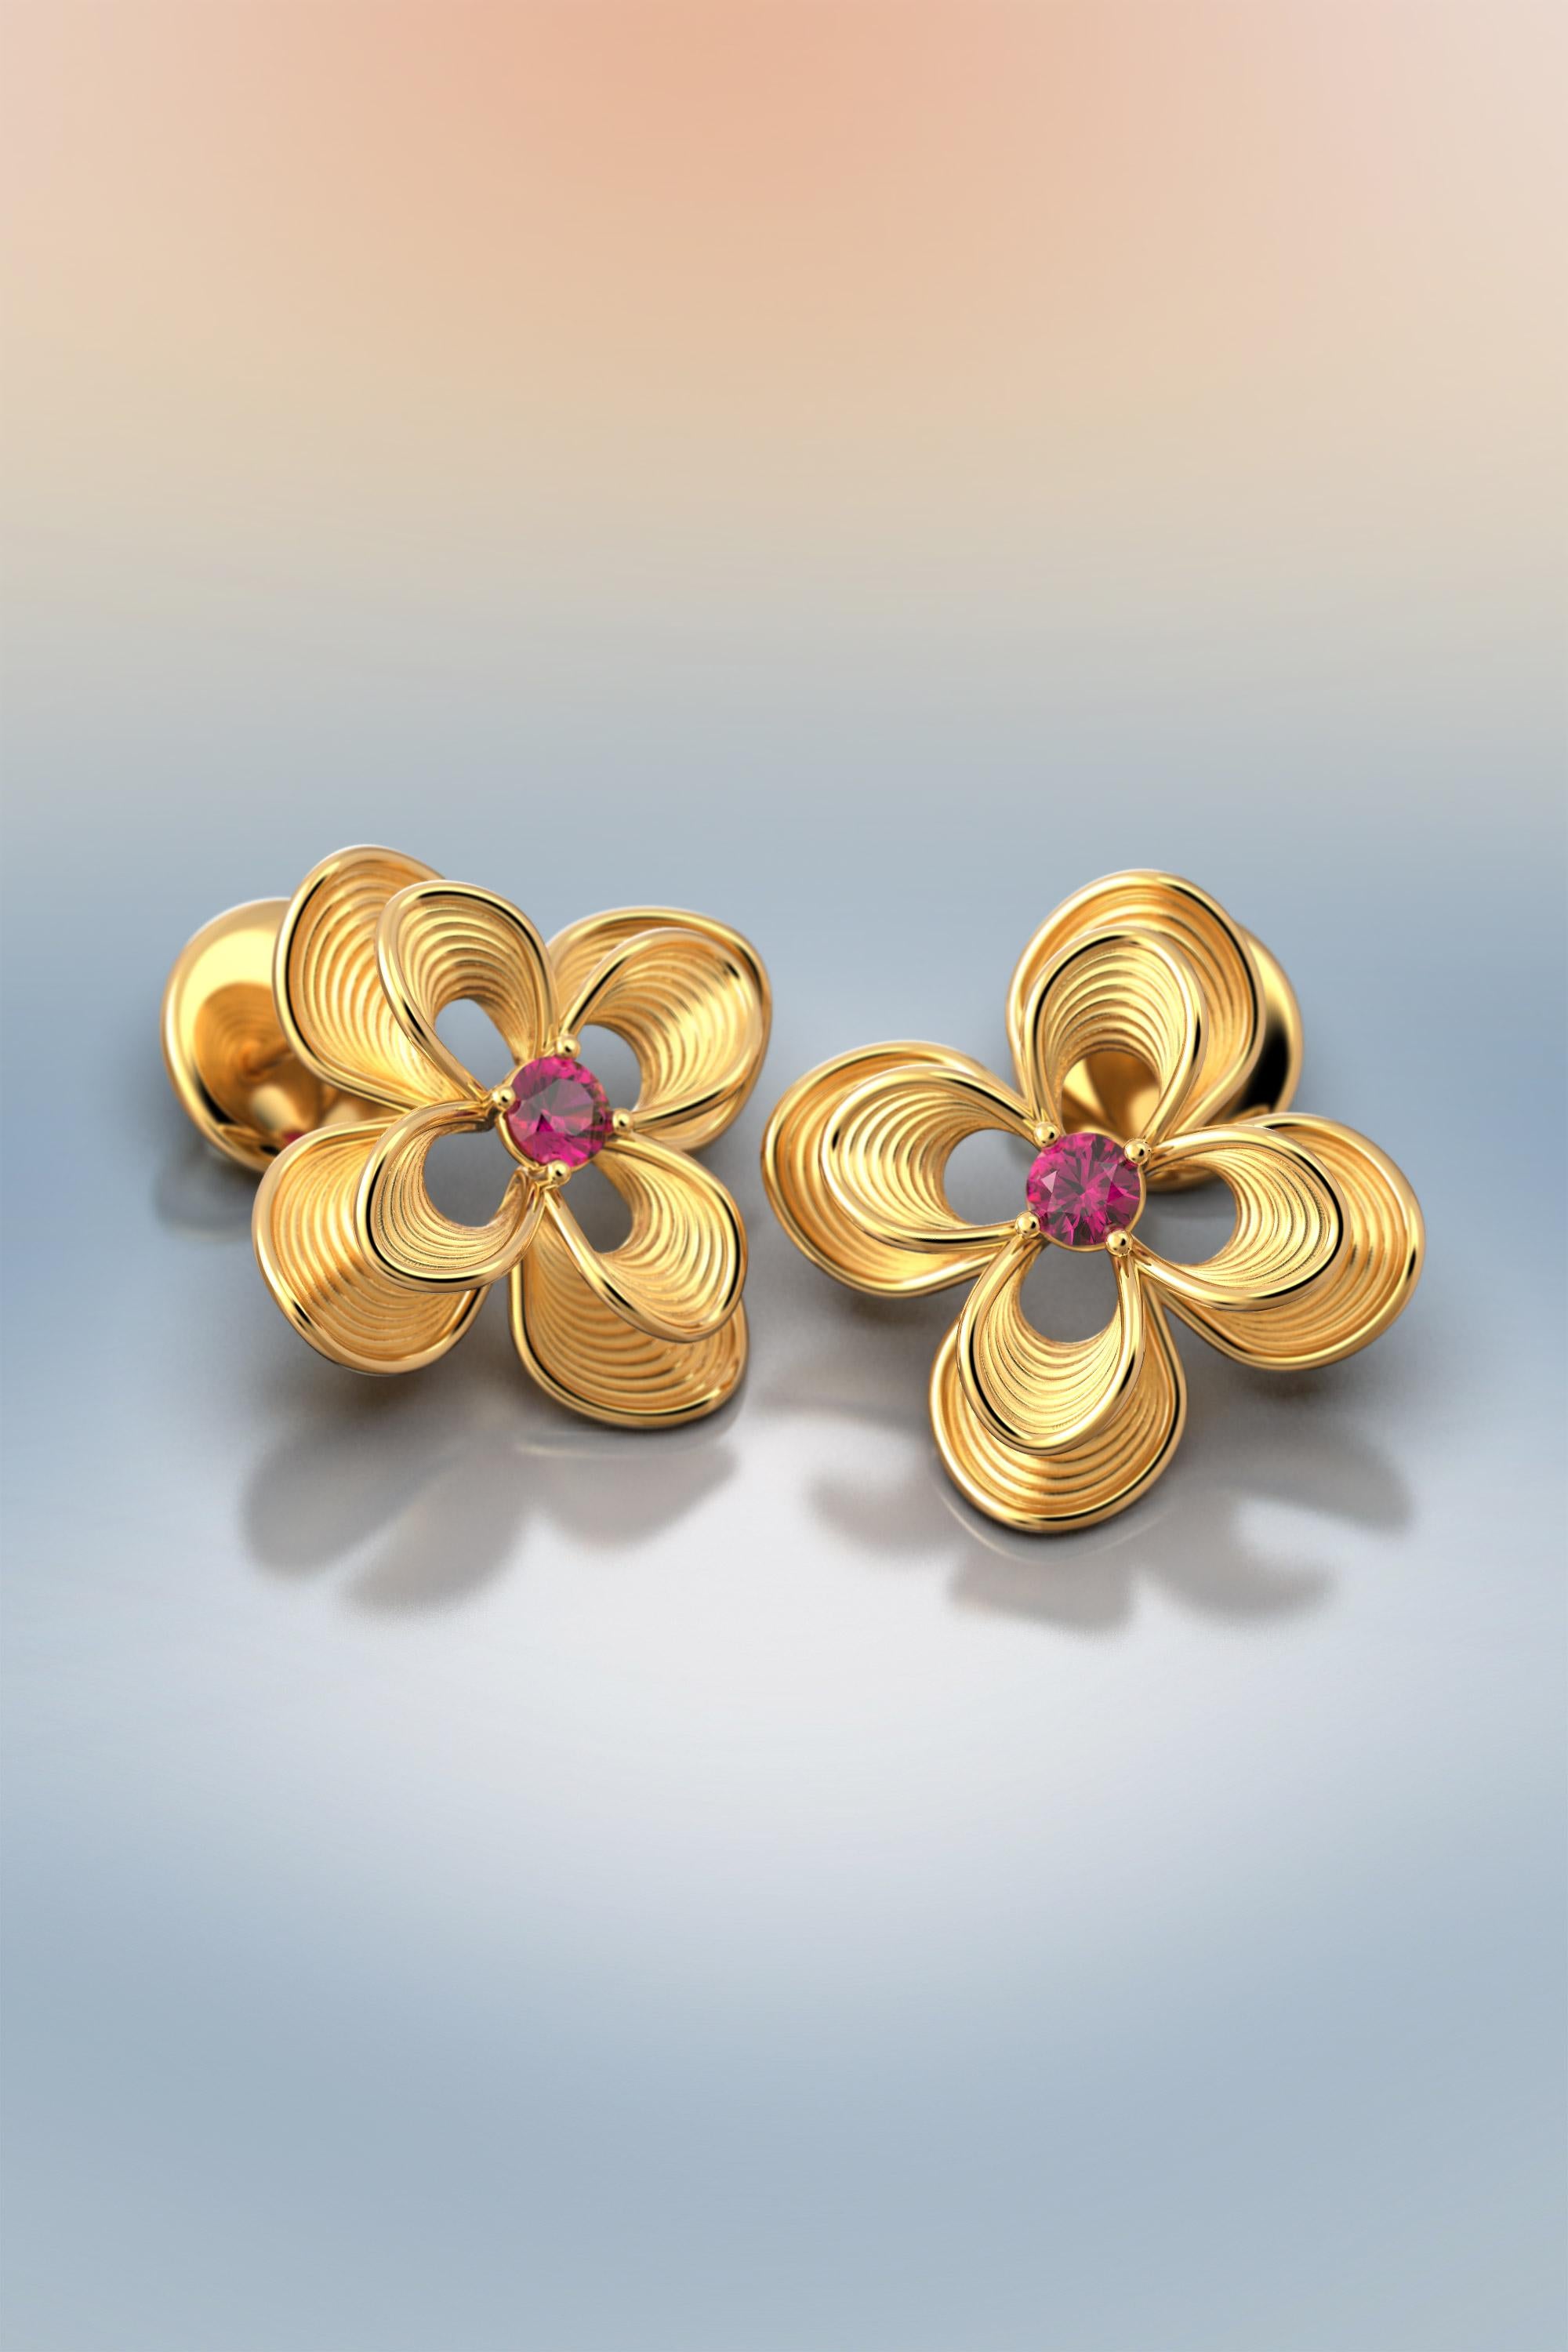 Women's Italian Ruby Stud Earrings in 14k Gold by Oltremare Gioielli For Sale